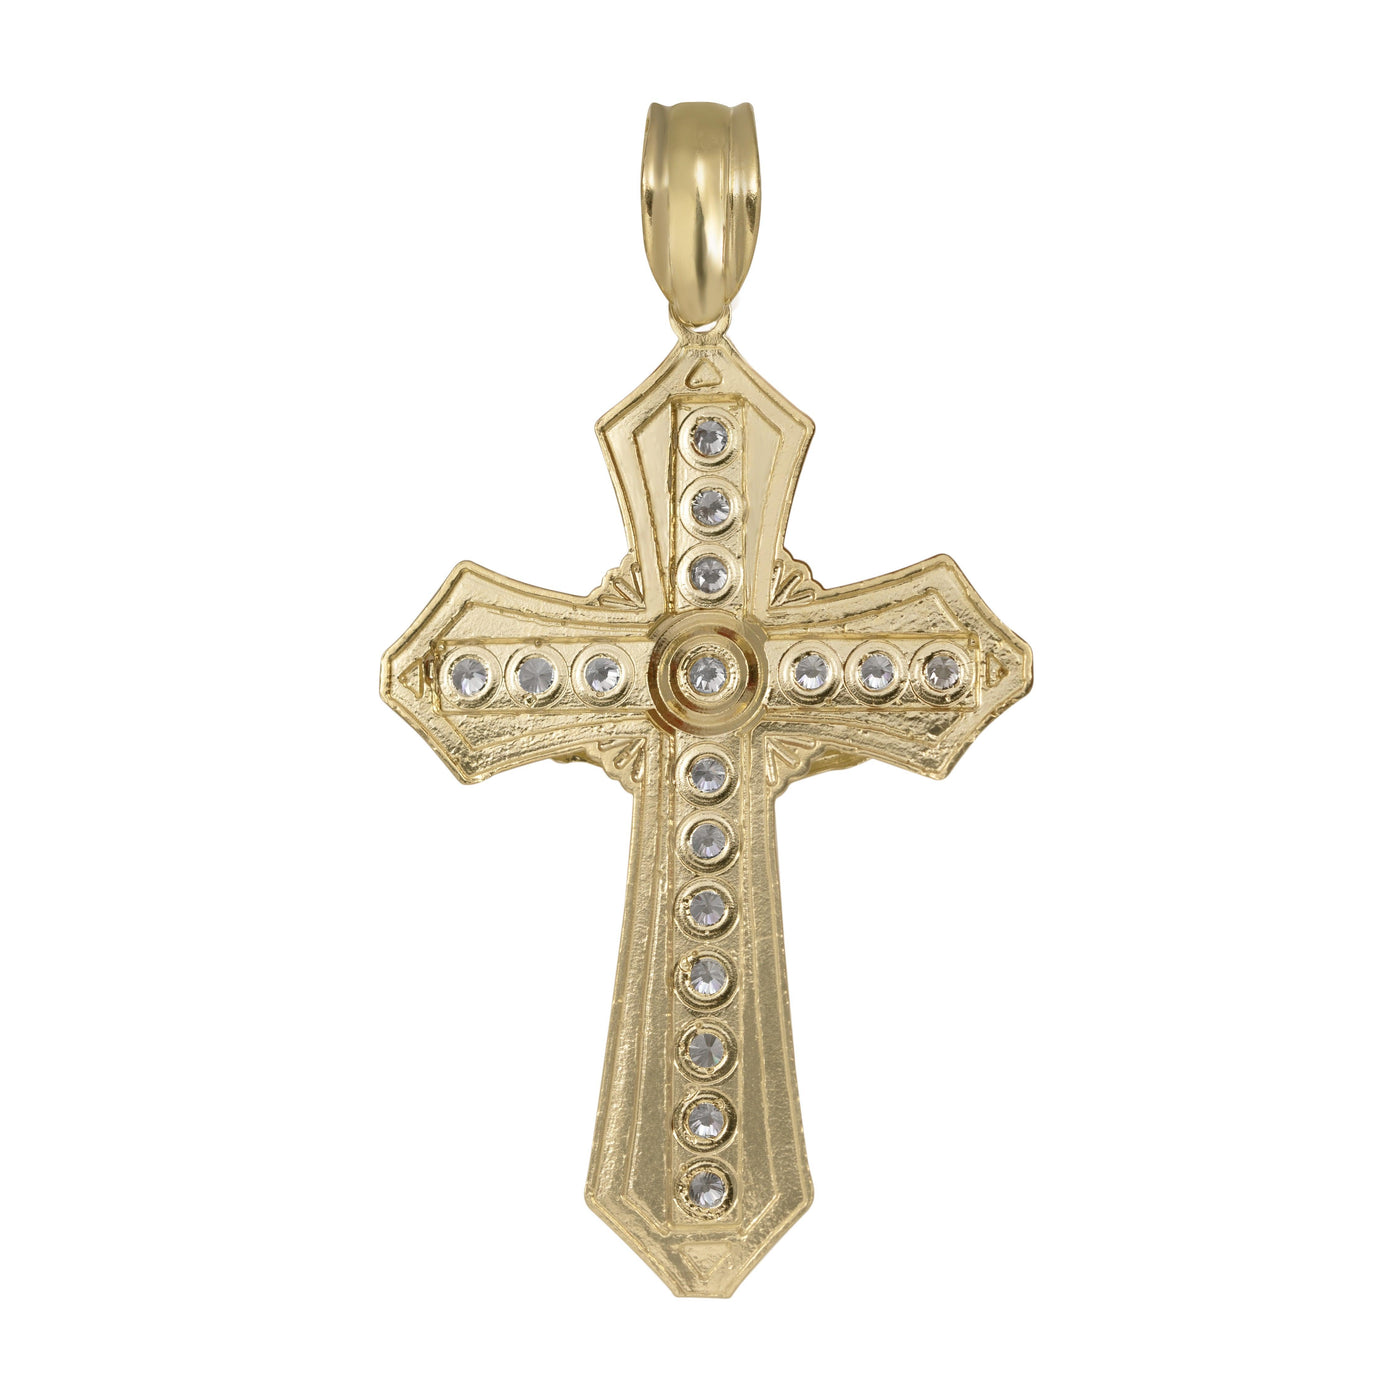 2 3/4" CZ Crucifix Cross Jesus Pendant 10K Yellow Gold - bayamjewelry